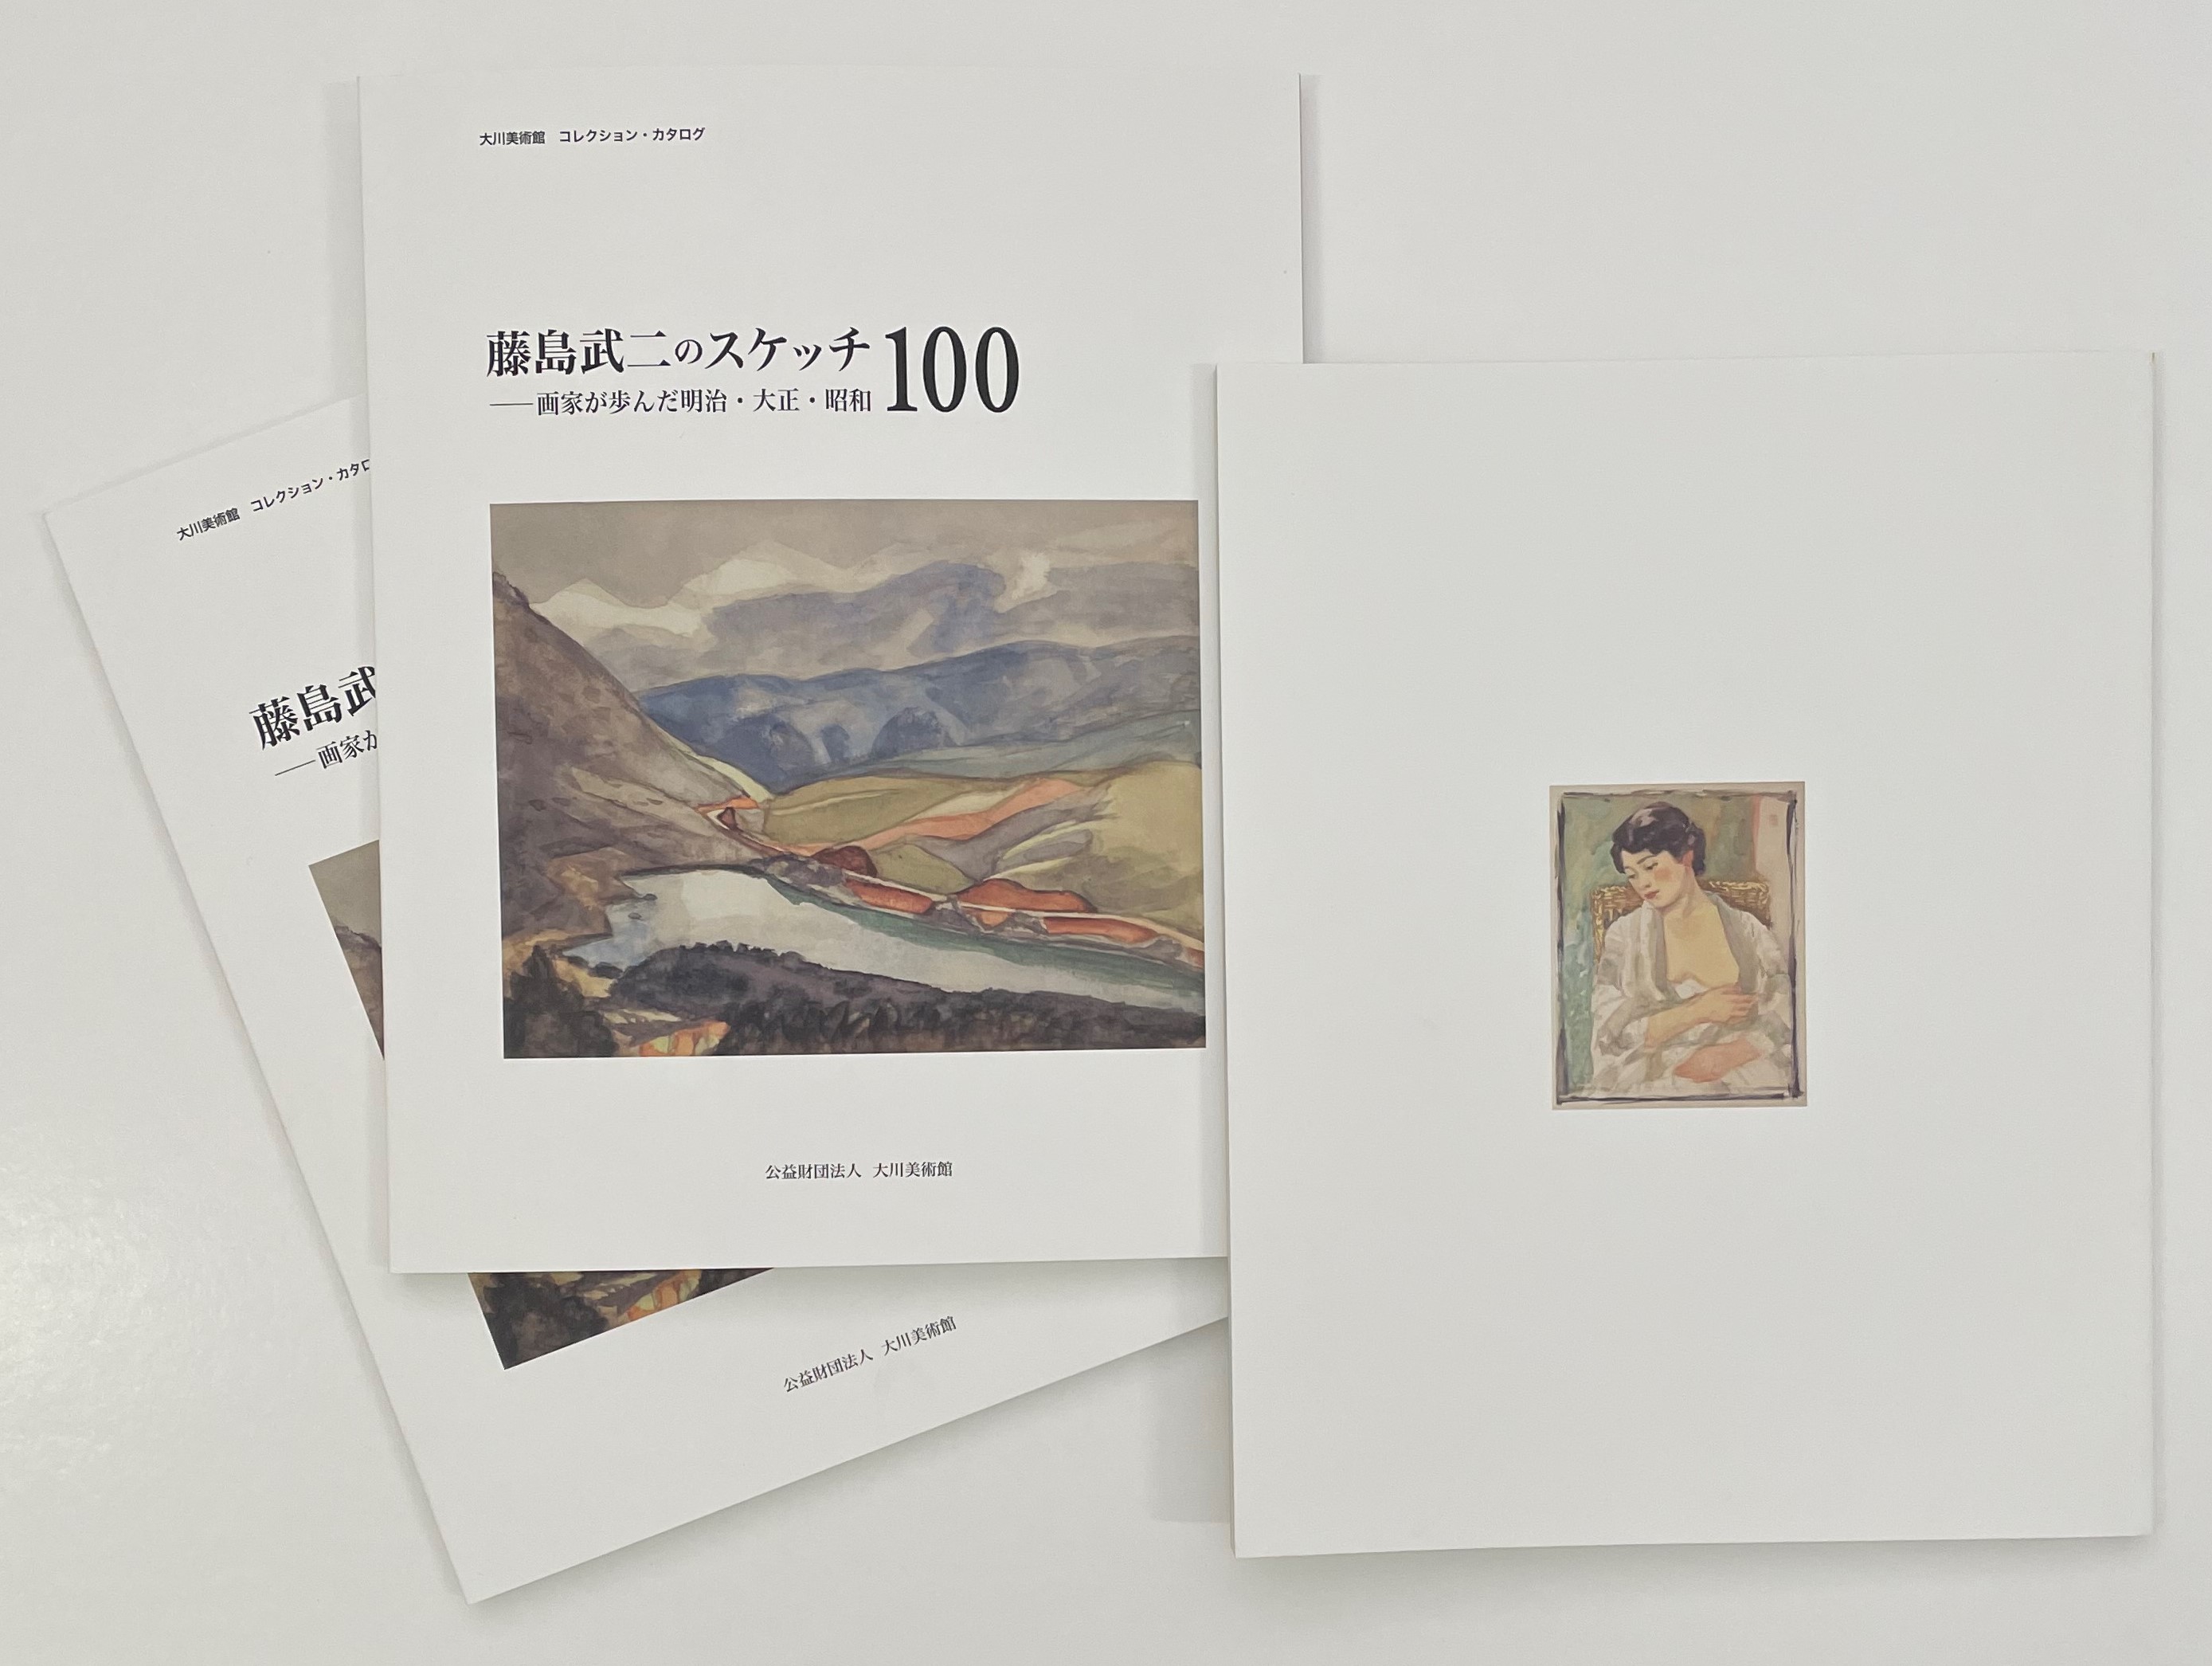 大川美術館コレクションカタログ
「藤島武二のスケッチ100」
「絵はがき」
ミュージアムショップにて販売中です
